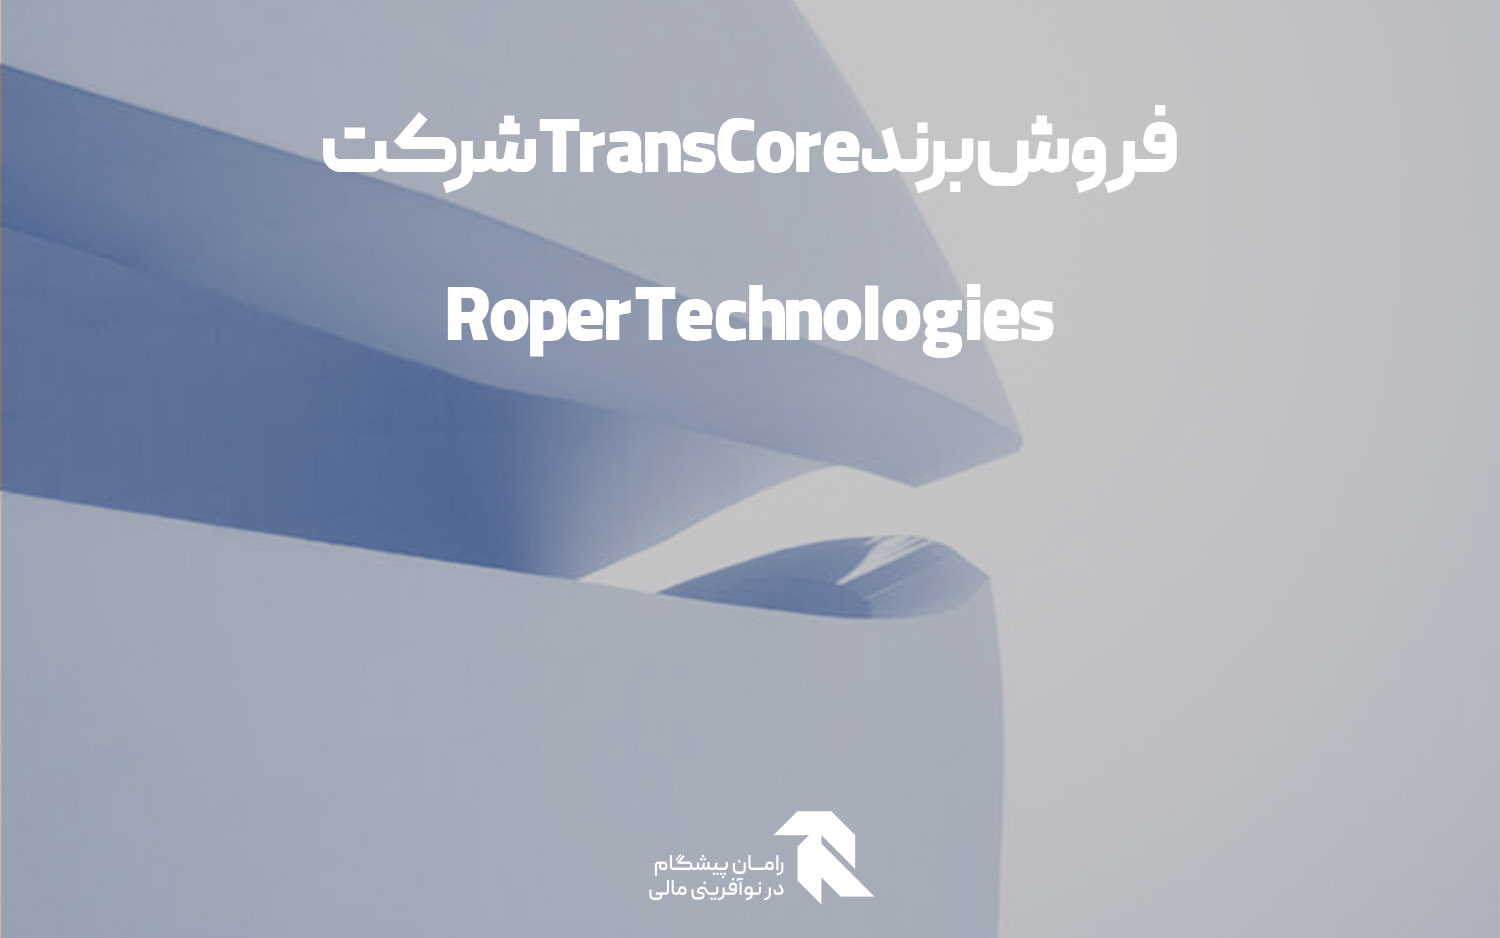 فروش برند TransCore شرکت Roper Technologies